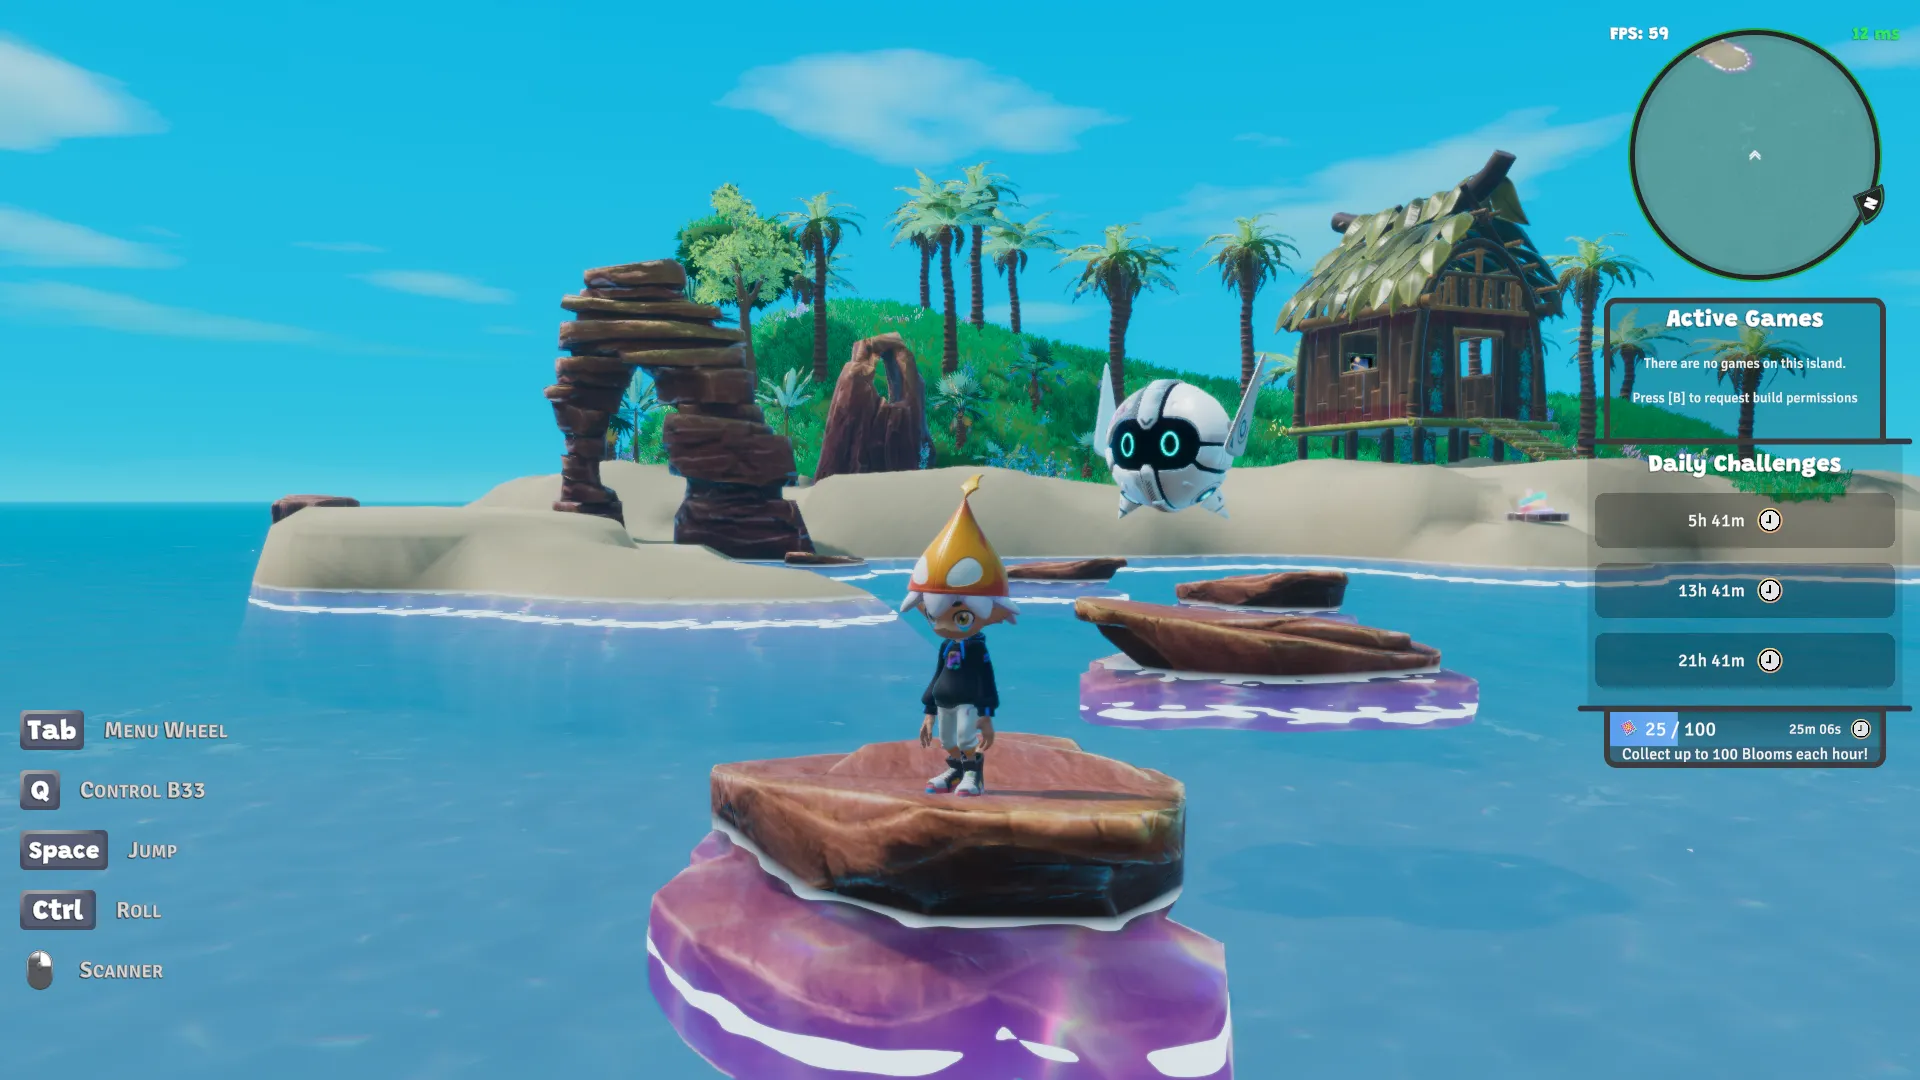 Capture d'écran de Nifty Island montrant une île en rendu 3D avec des formations rocheuses en arc et des tremplins rocheux dans l'eau. Un petit personnage coiffé d'un chapeau avec un robot flottant se tient sur l'un des rochers.